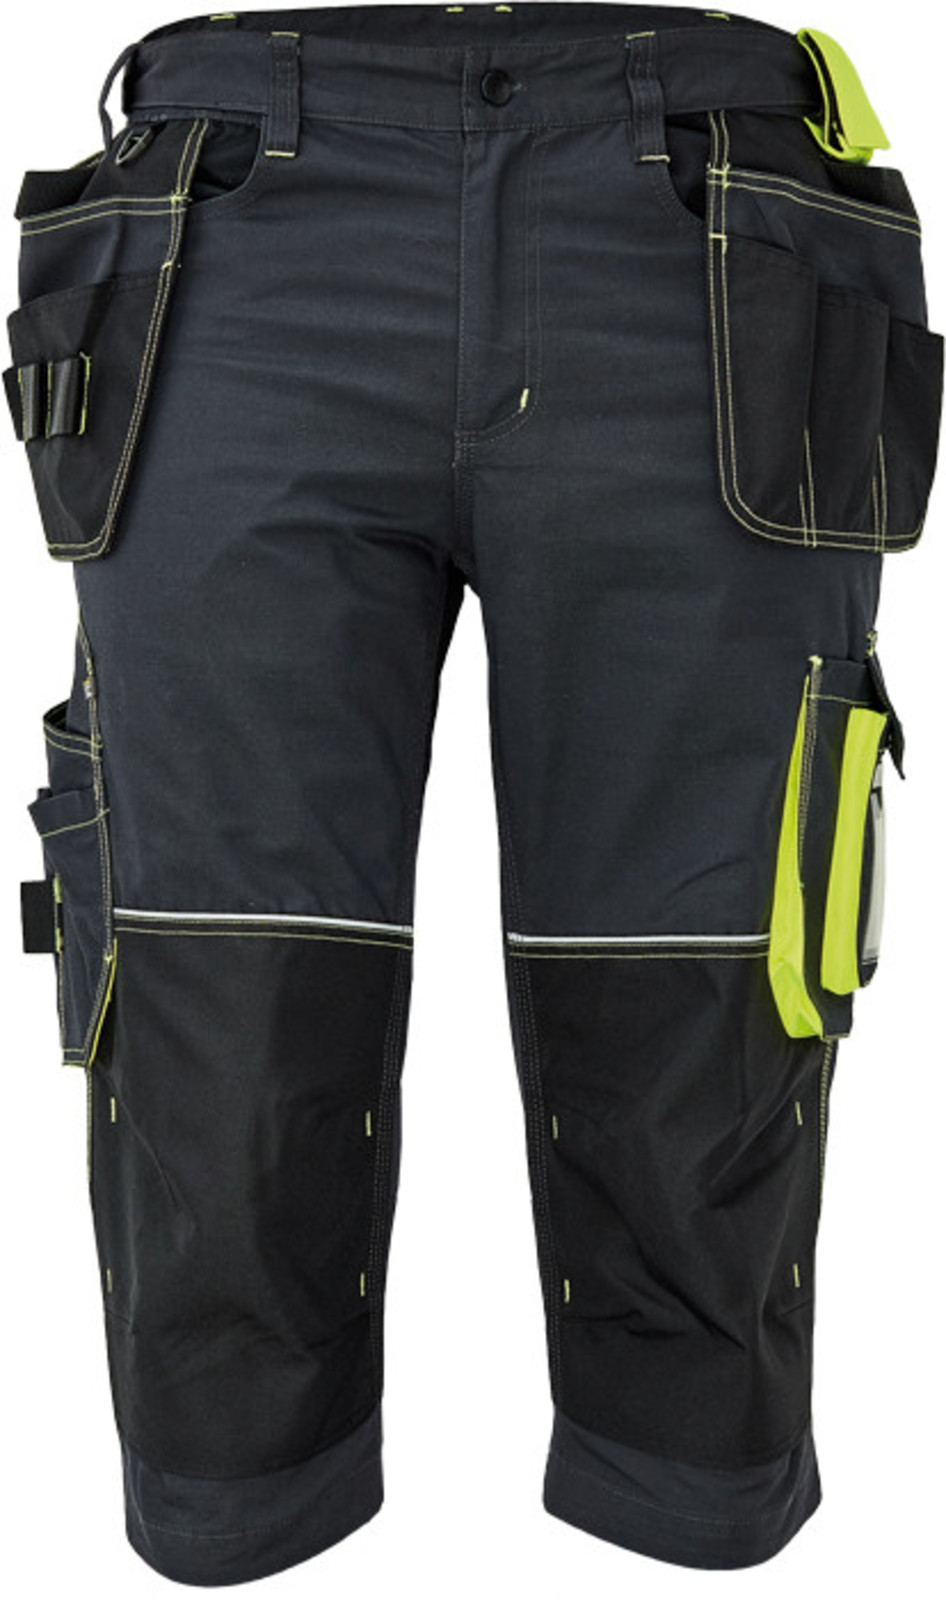 Pánske pracovné 3/4 nohavice Cerva Knoxfield 320 - veľkosť: 46, farba: antracit/žltá